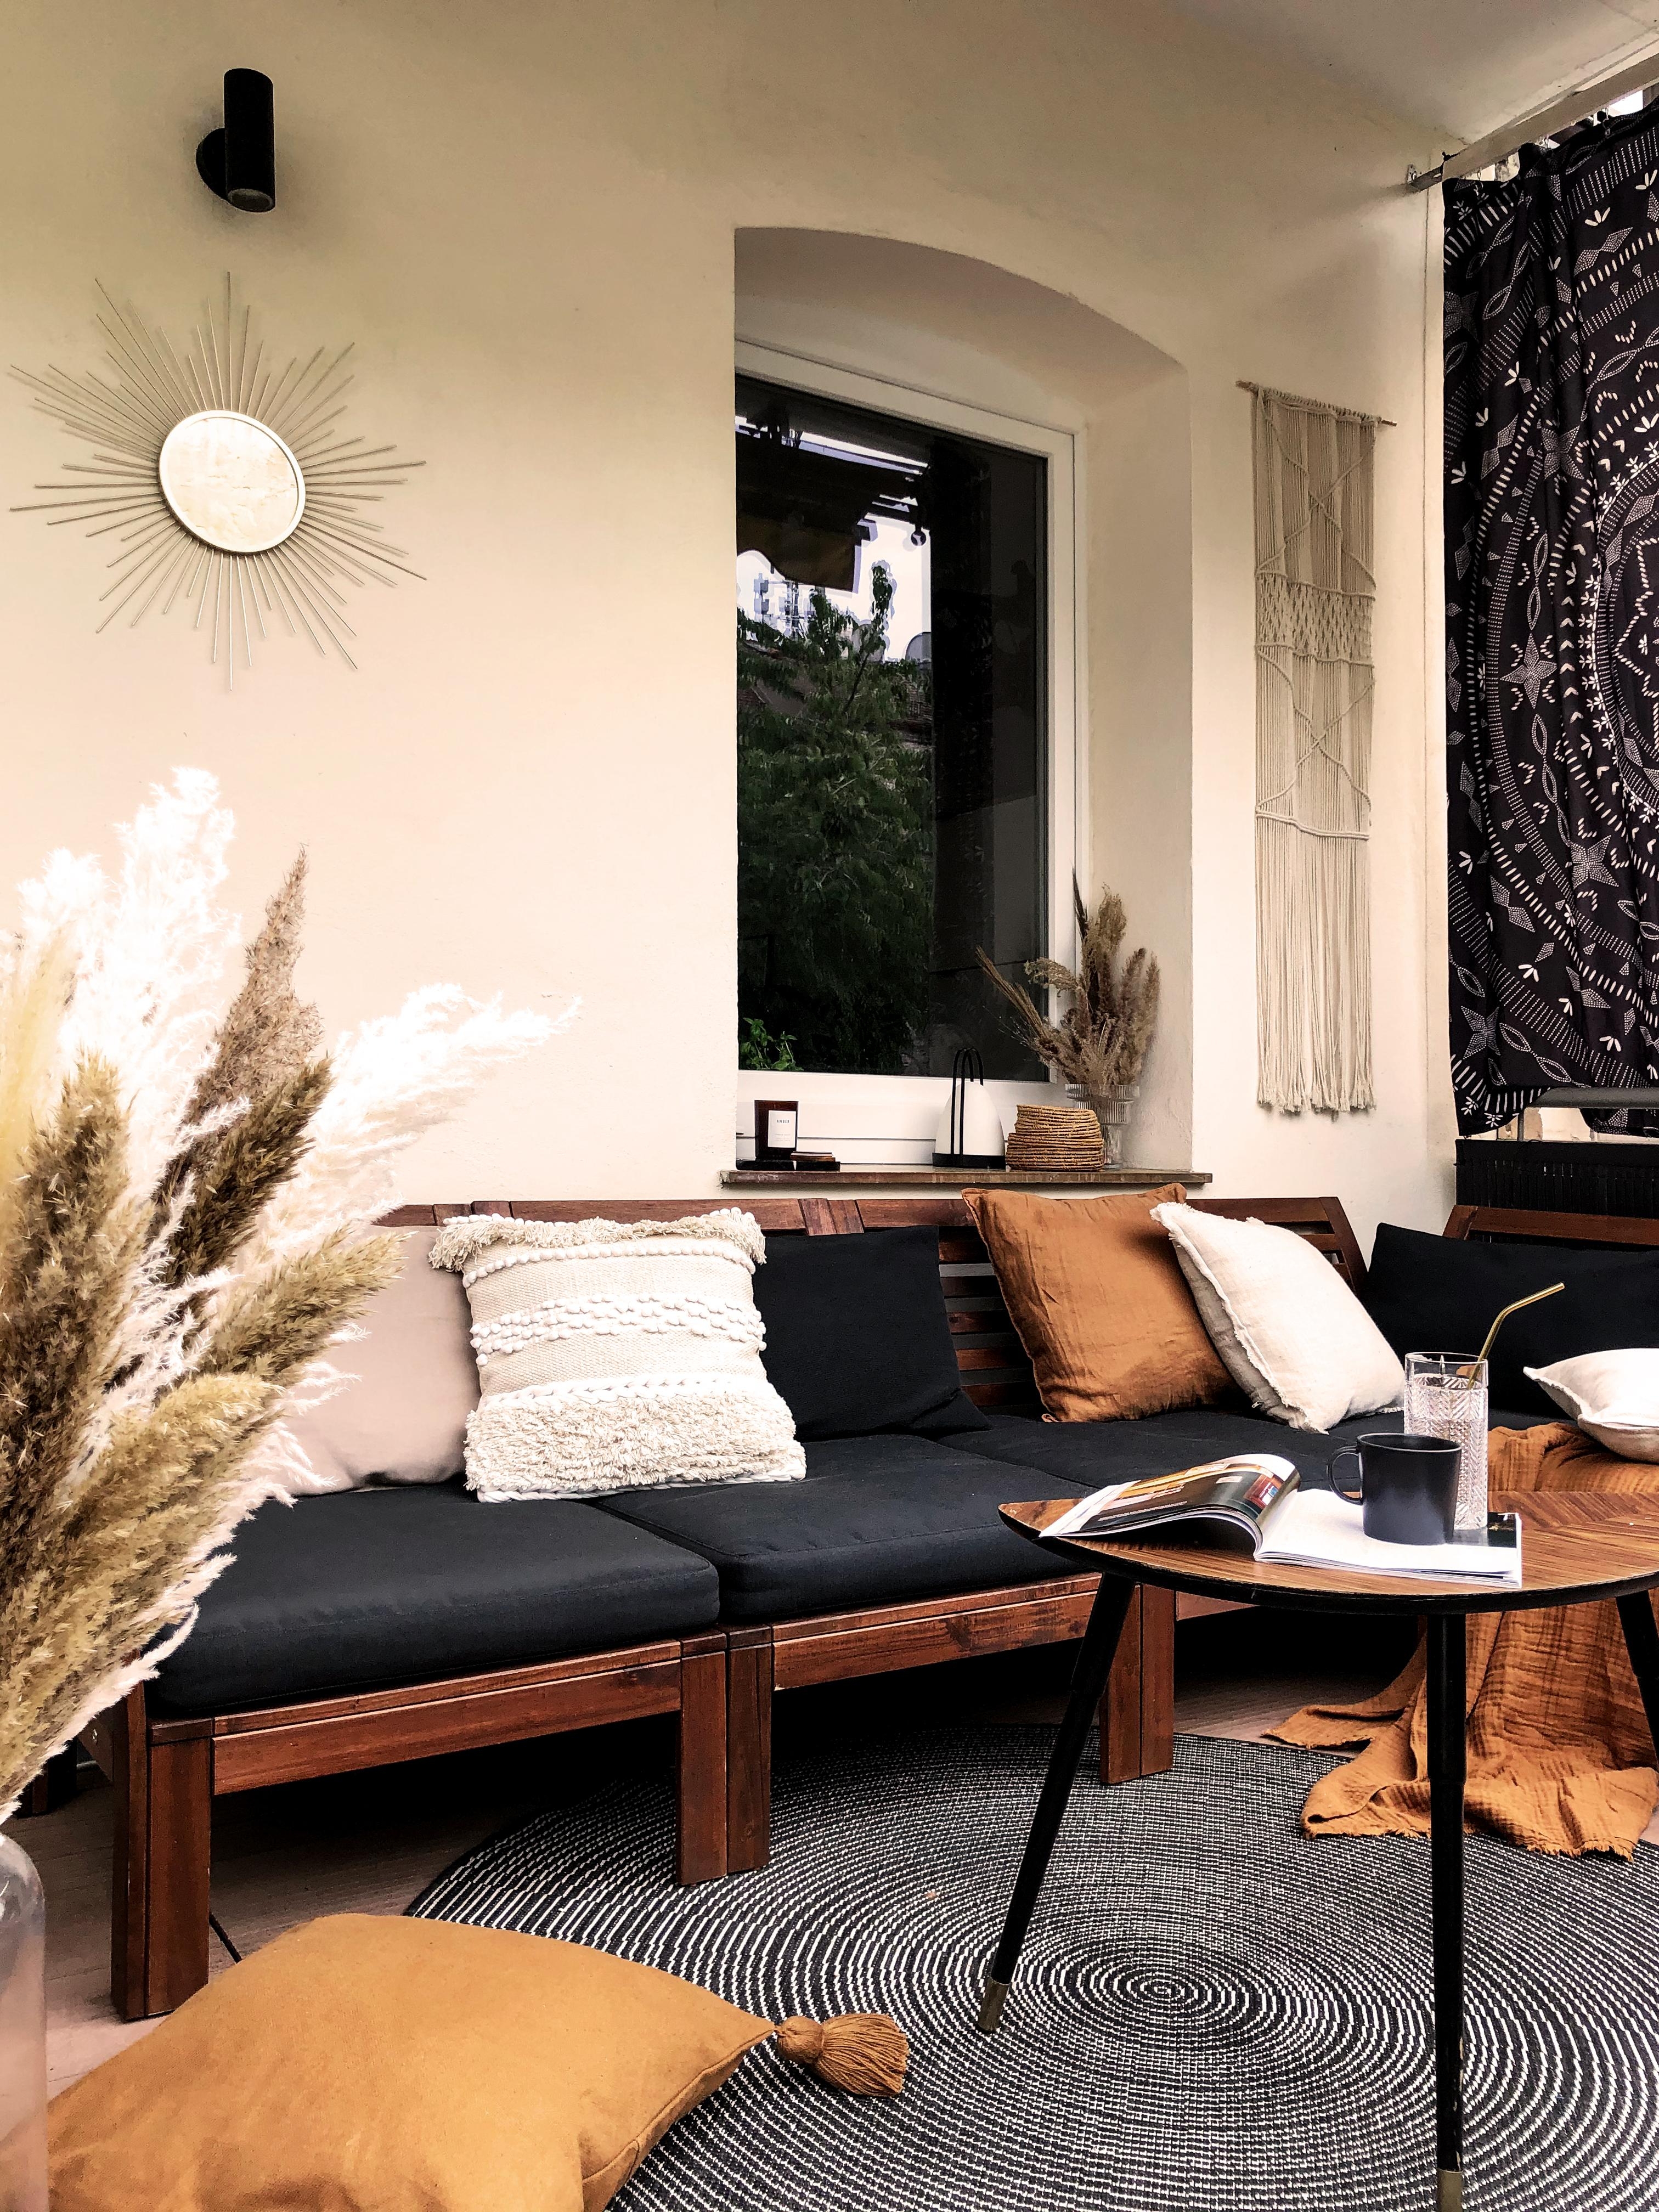 Endlich kann man wieder die Sonne im Outdoor-Wohnzimmer geniessen ☀ 

#Balkon #hygge #Boho #Wohnzimmer #COUCHstyle